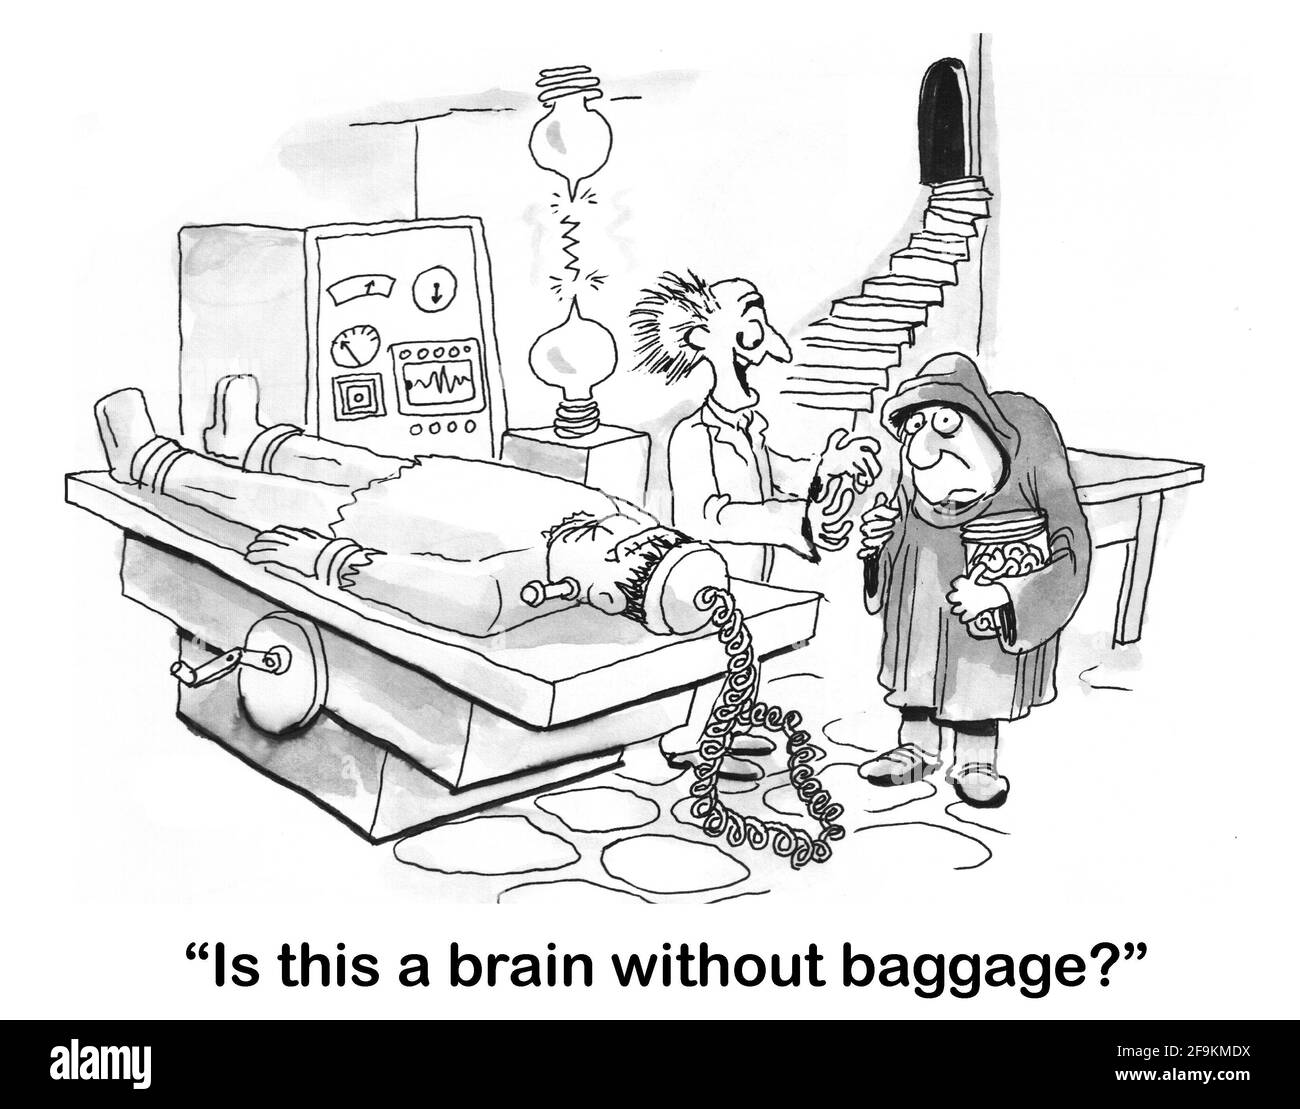 El científico loco le pregunta a su asistente si trajo un cerebro sin equipaje. Foto de stock